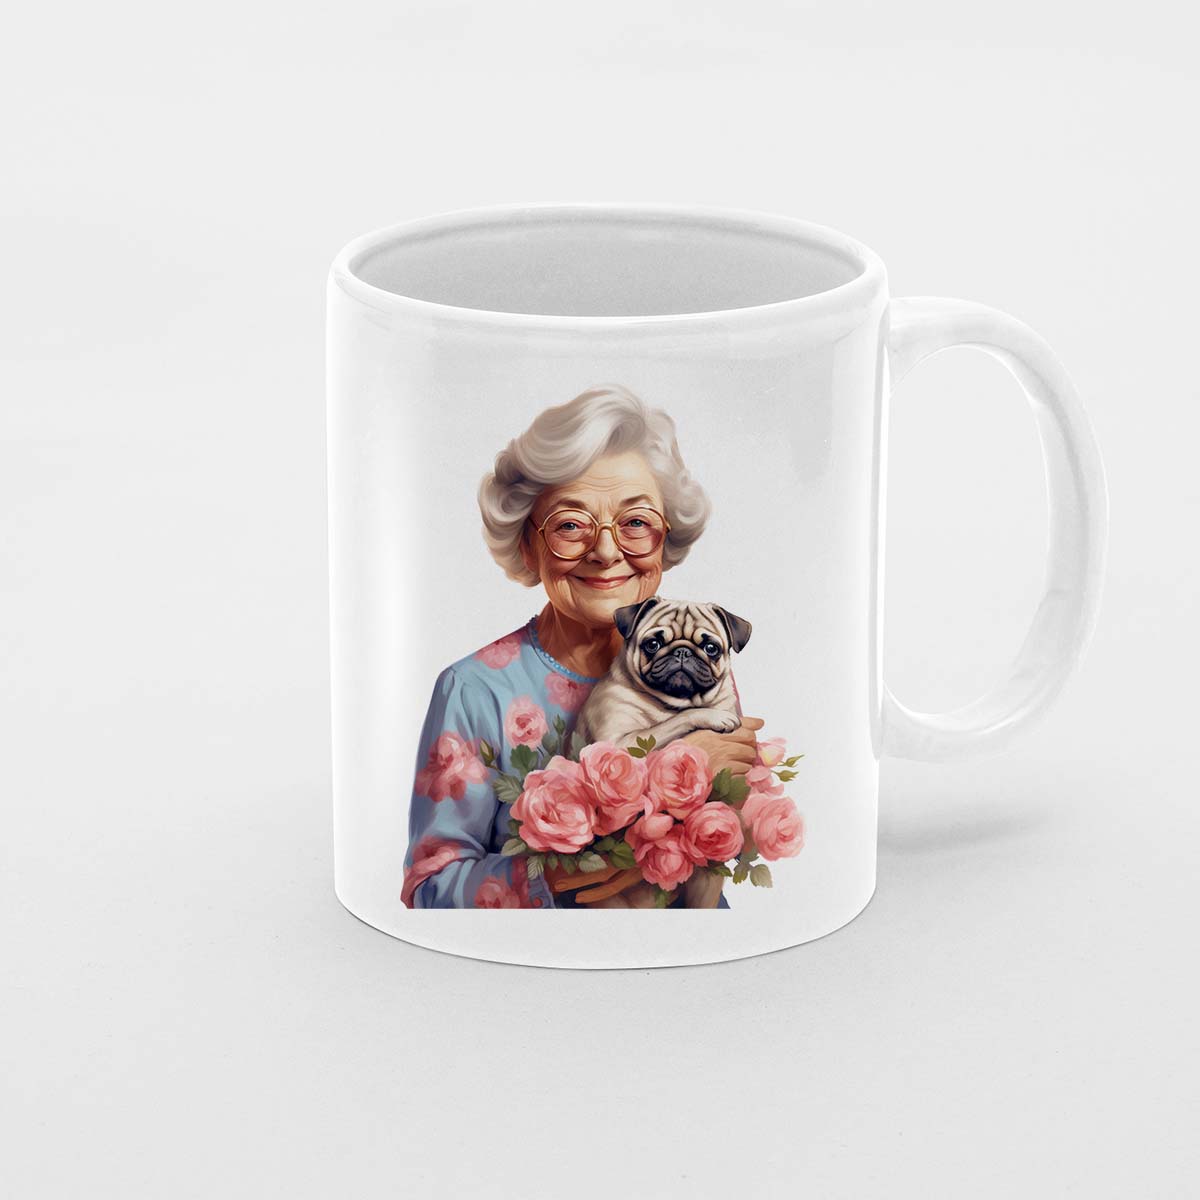 Custom Dog Mom Mug, Grandma and Pug Dog Love Ceramic Mug, Dog Owner Gift, Dog Lover Mug, Gift For Dog Mom, Gift For Dog Owner, Dog Coffee Mugs, Dog Grandma Coffee Mug, Mother's Day Gift